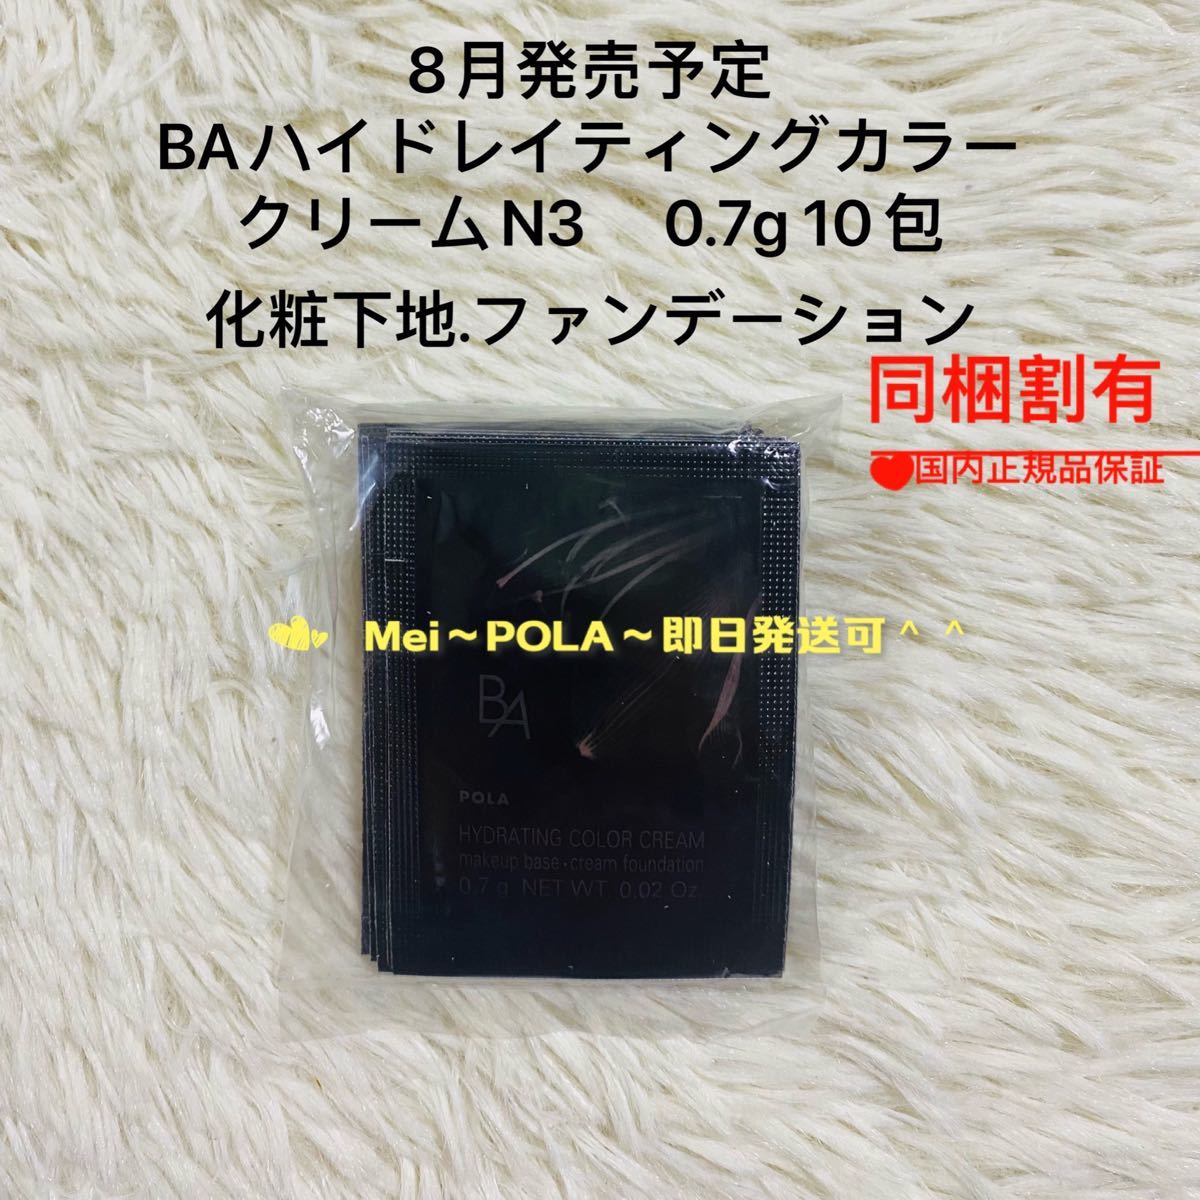 新発売 pola BA ハイドレイティング カラークリームN3 0.7g 10包